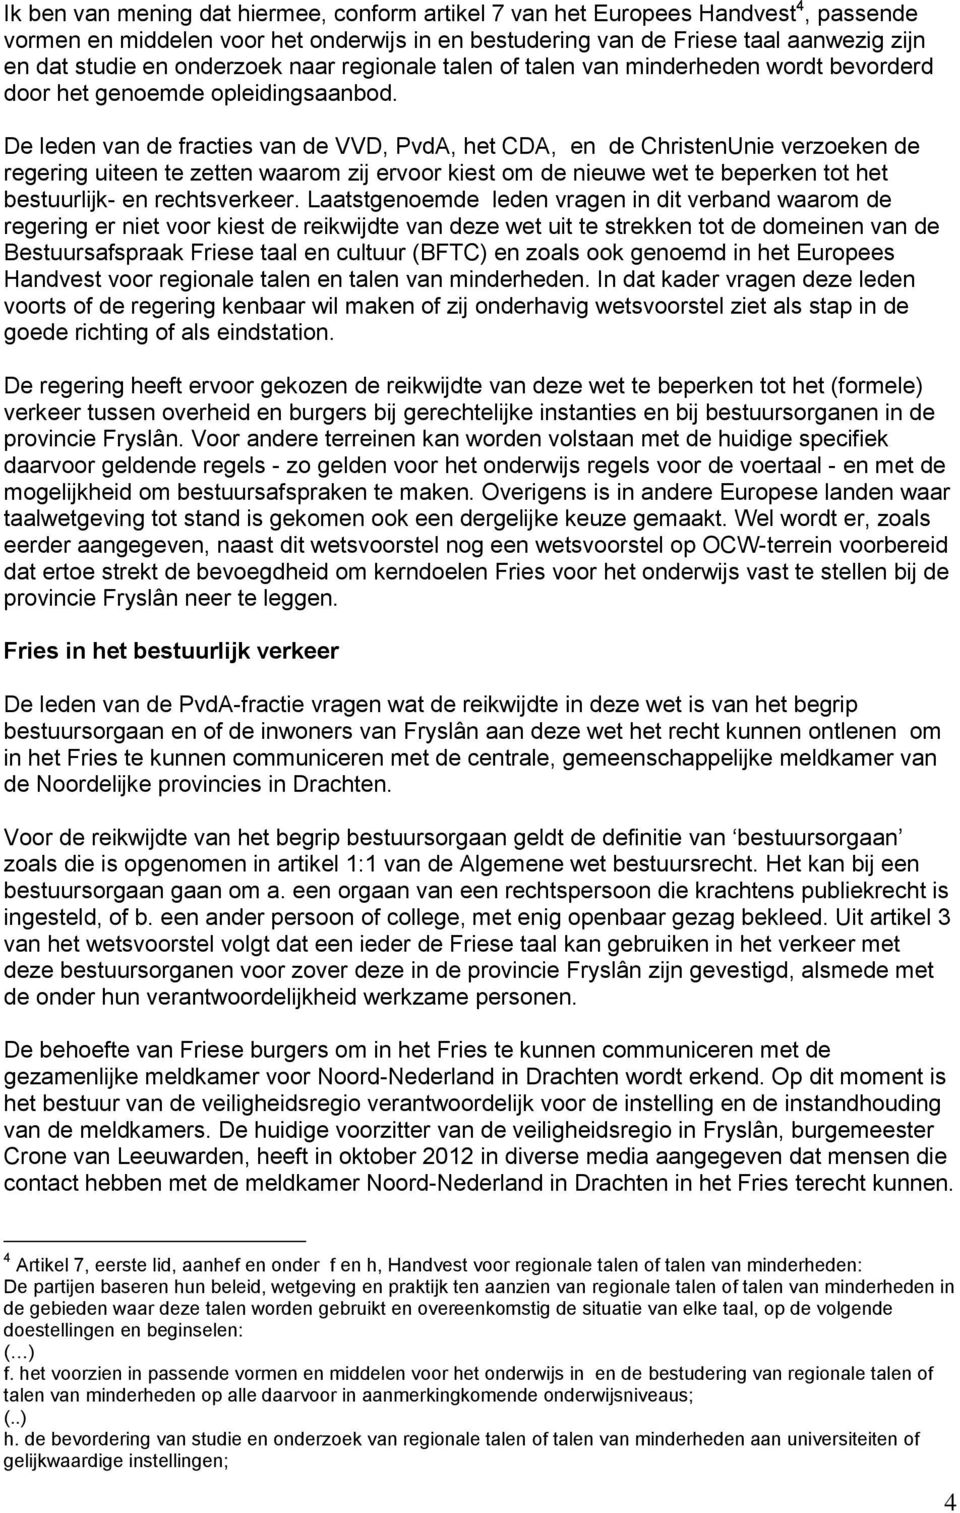 De leden van de fracties van de VVD, PvdA, het CDA, en de ChristenUnie verzoeken de regering uiteen te zetten waarom zij ervoor kiest om de nieuwe wet te beperken tot het bestuurlijk- en